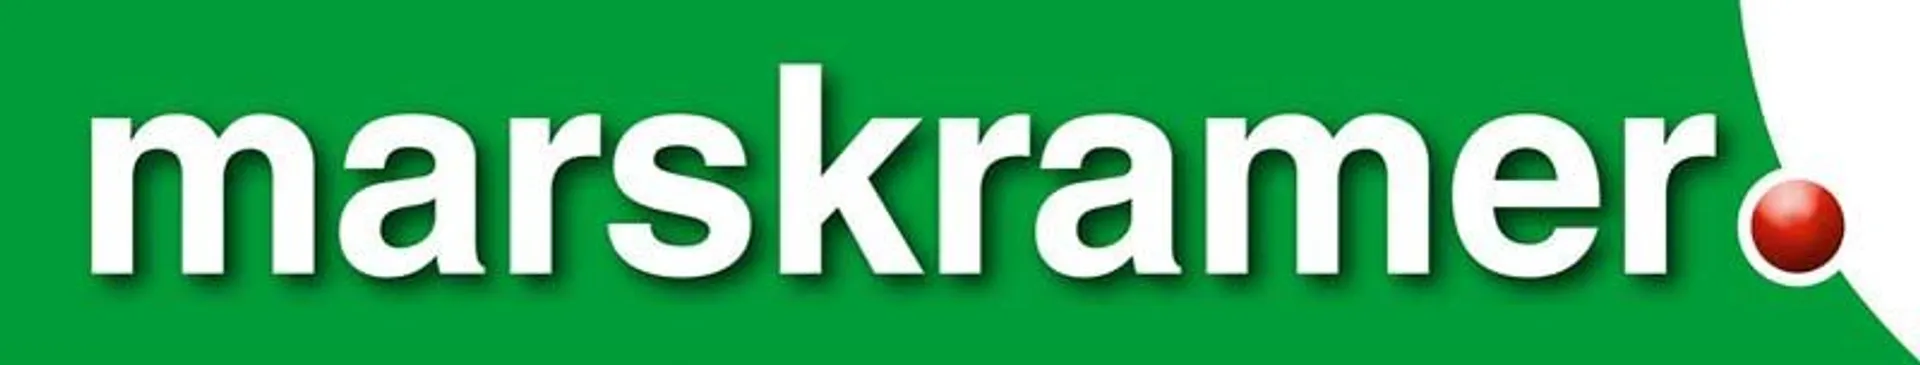 MARSKRAMER logo